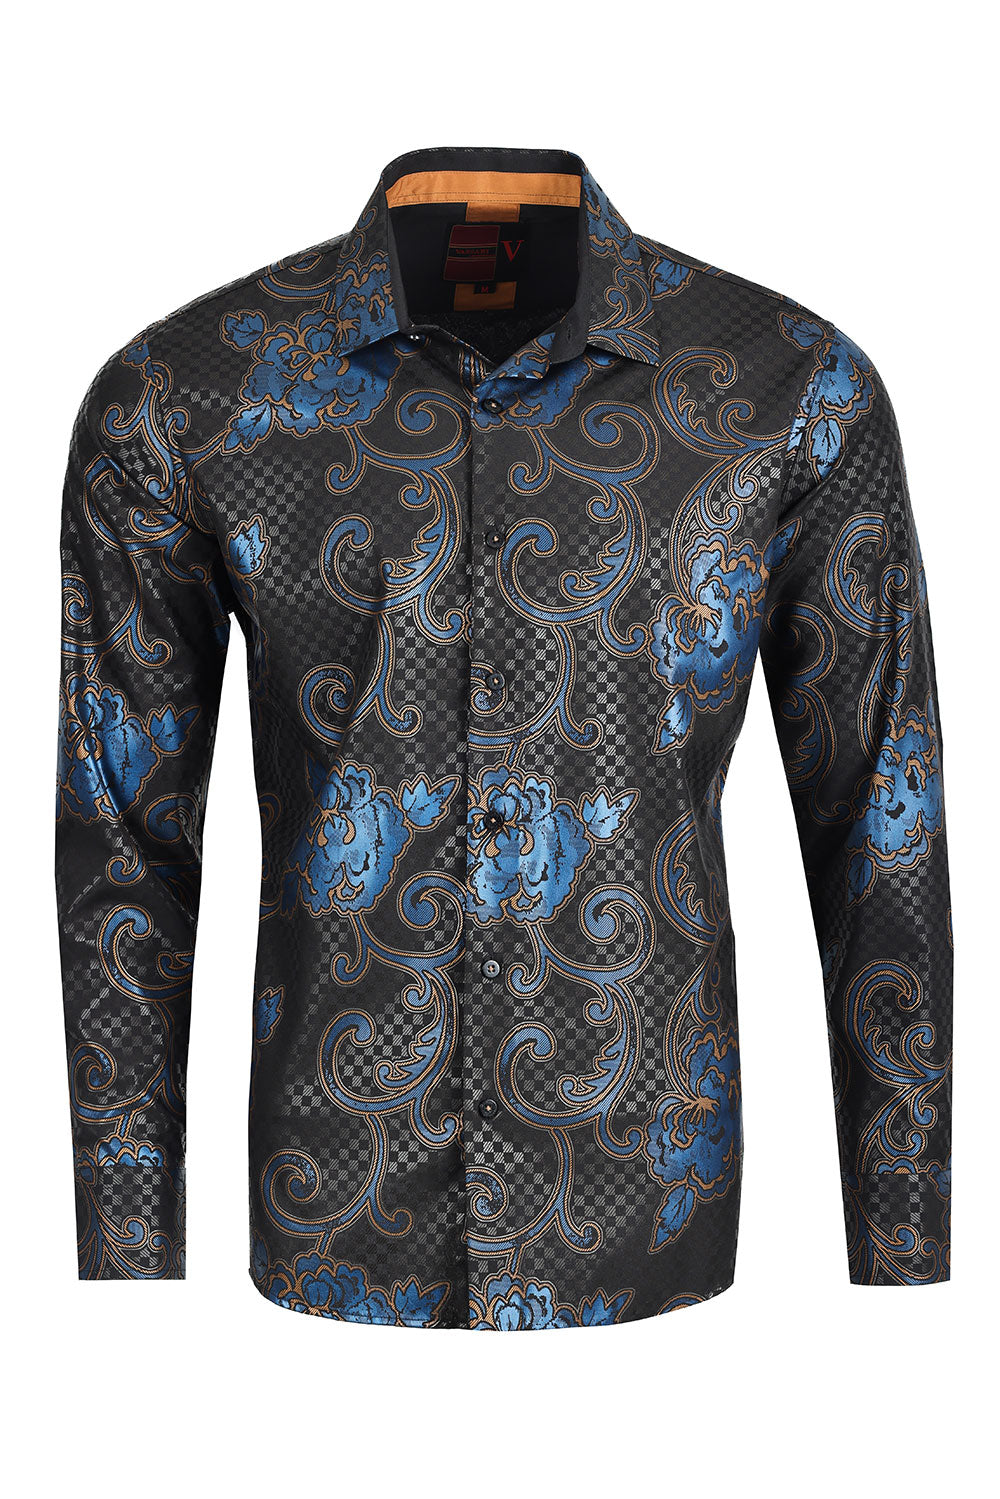 Vassari by Barabas Men's Floral Chess Chess Long Sleeve Shirt 2VS167